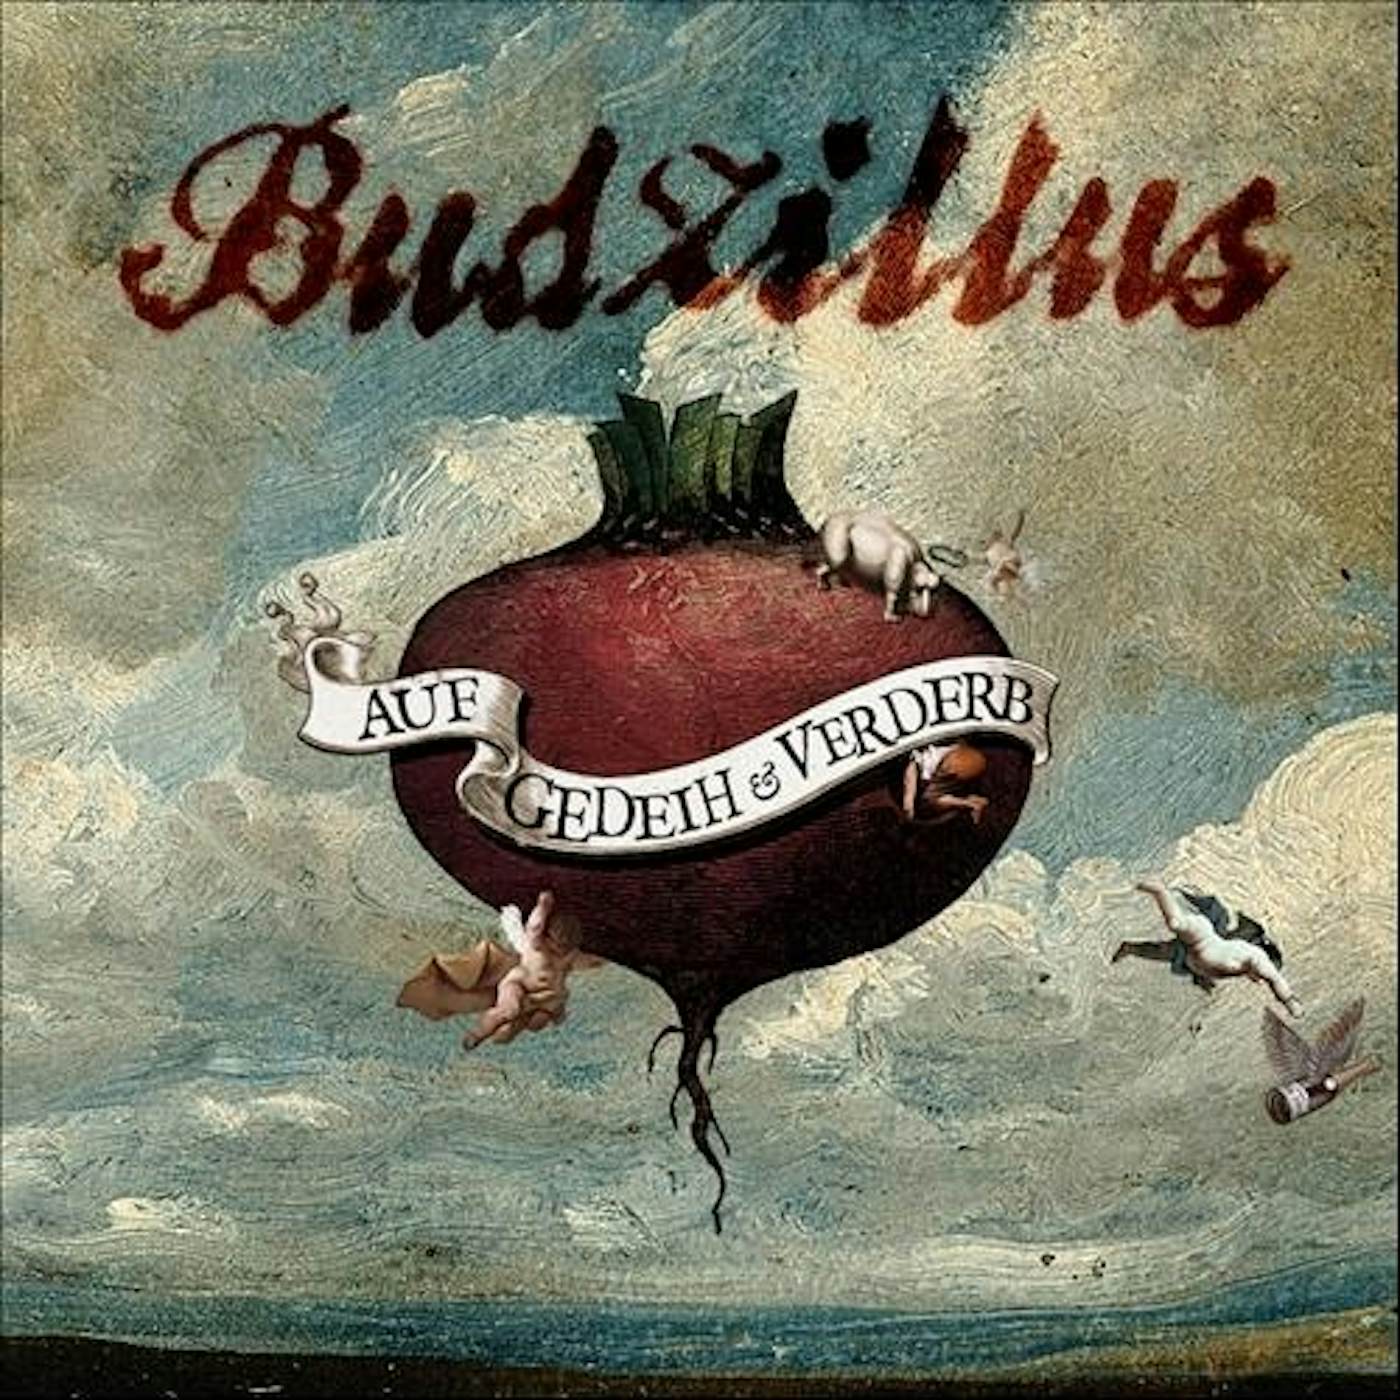 Budzillus Auf Gedeih & Verderb Vinyl Record